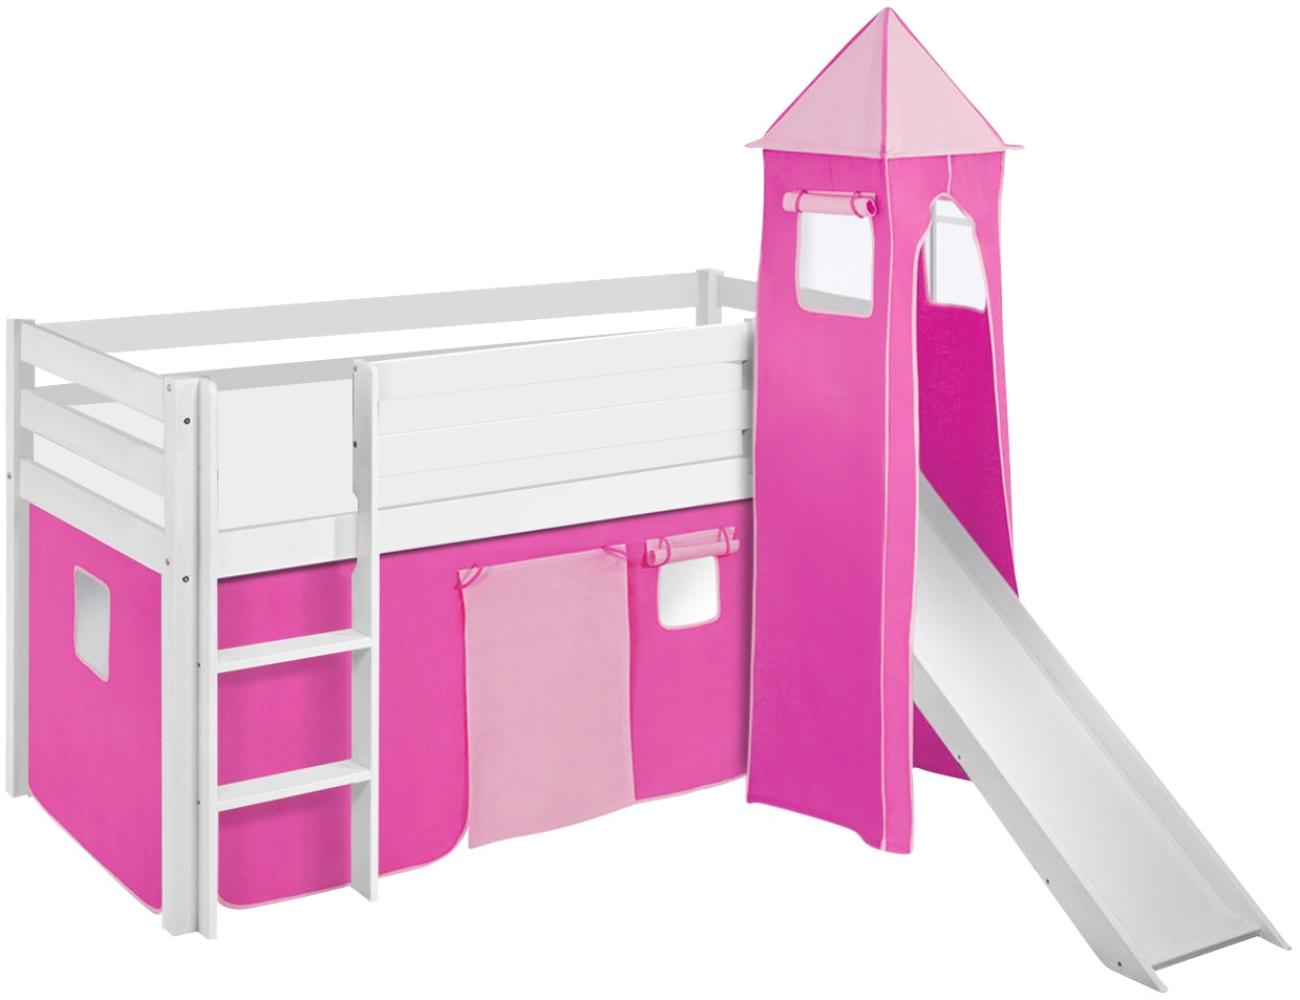 Lilokids 'Jelle' Spielbett 90 x 200 cm, Rosa, Kiefer massiv, mit Turm, Rutsche und Vorhang Bild 1